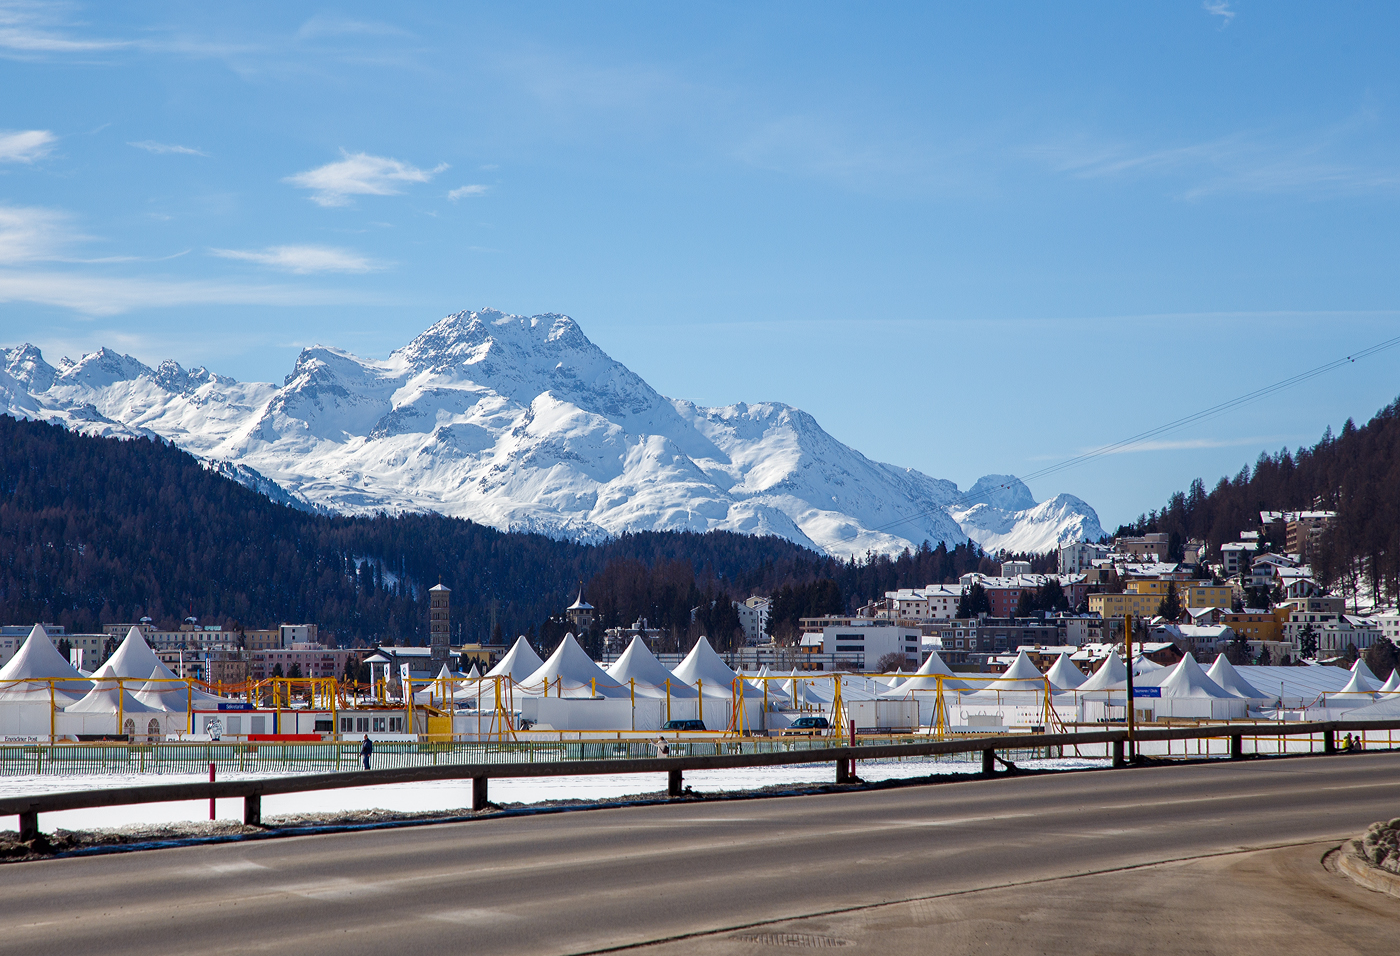 Wir waren einen Tag nach der 44. Alpinen Skiweltmeisterschaften (6. bis 19. Februar 2017) in St. Moritz. Blick vom RhB Bahnhof Sankt Moritz am 20 Februar 2017 in südlicher Richtung, hier kann man noch die vielen Zelte sehen.

Der Weg unserer Rückreise von Tirano (Italien) nach Hause führte uns mit der RhB Berninabahn über St. Moritz, hier hatten wir eine etwas längere Umsteigezeit bevor es über Chur und Landquart weiter ging.